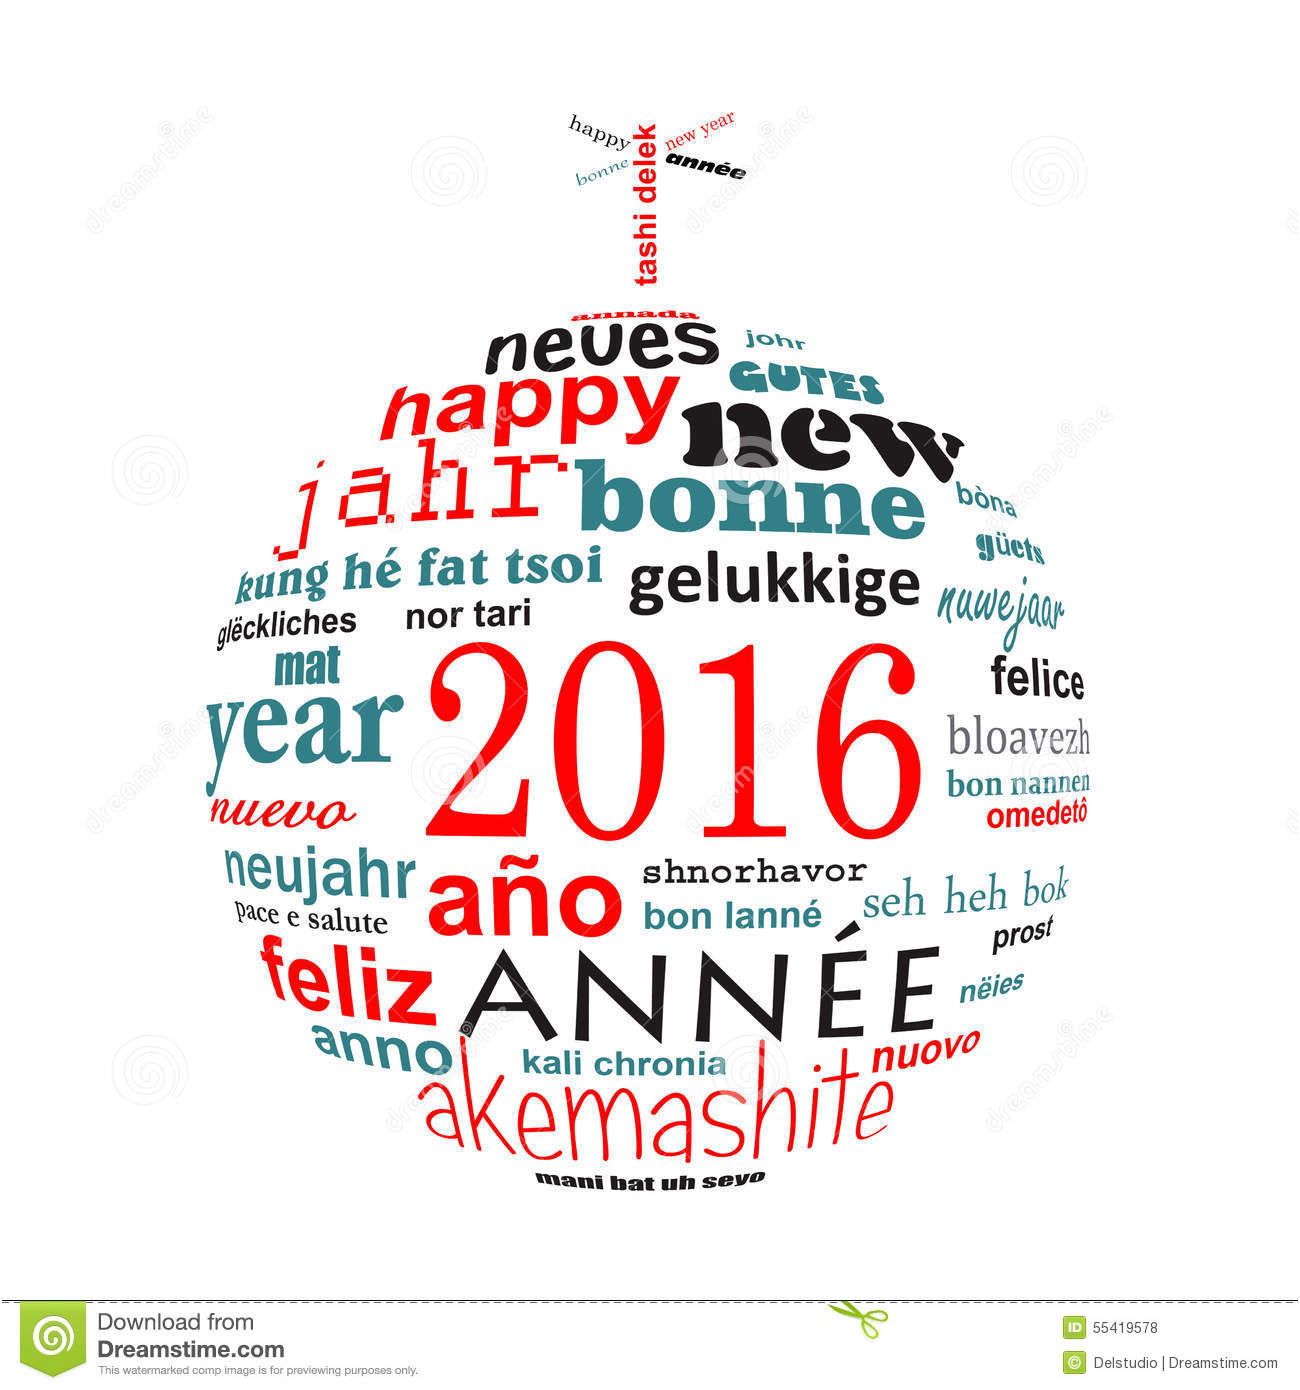 Carte De Voeux 2016 Gratuite Inspiration Carte De Voeux Multilingue De Nuage De Mot Des Textes De